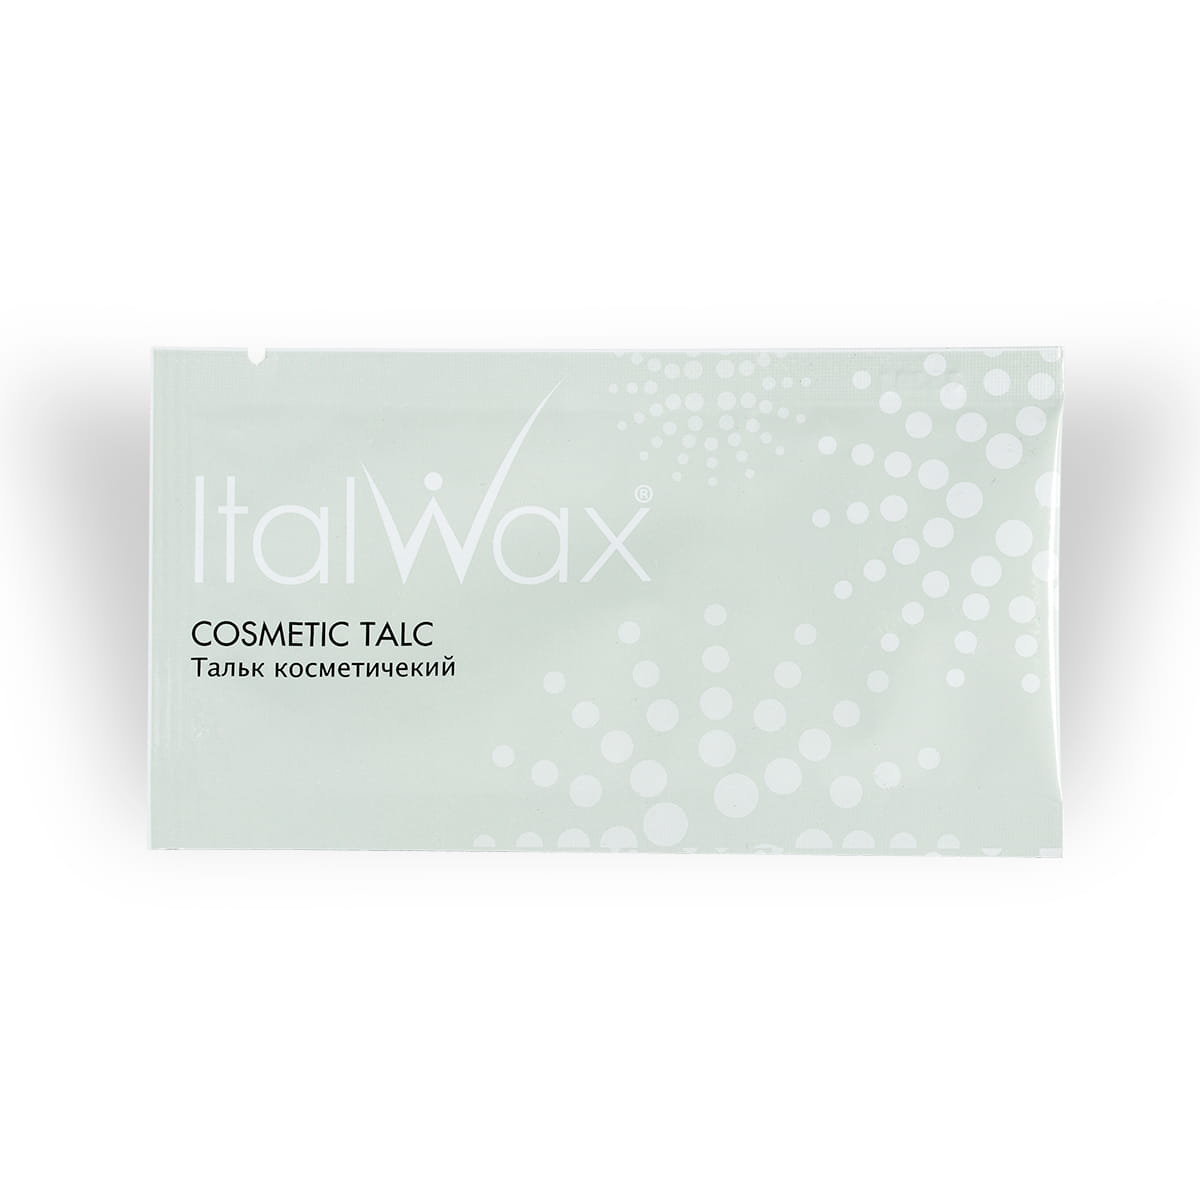 ItalWax Talk Kosmetyczny bezzapachowy 3g